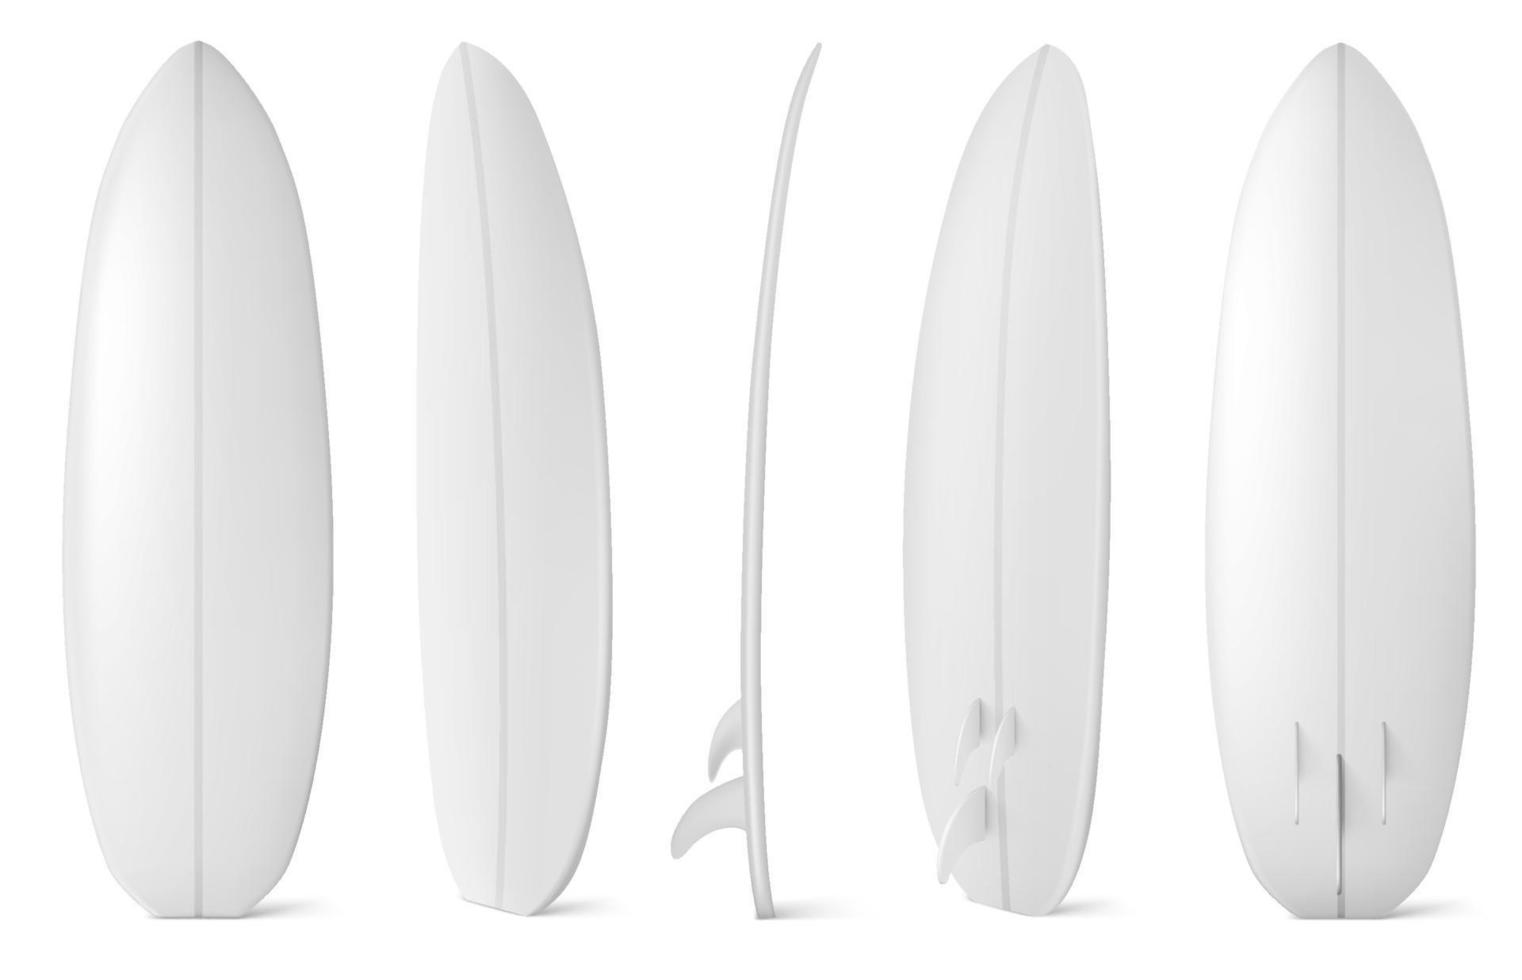 planche de surf blanche vue avant, latérale et arrière vecteur